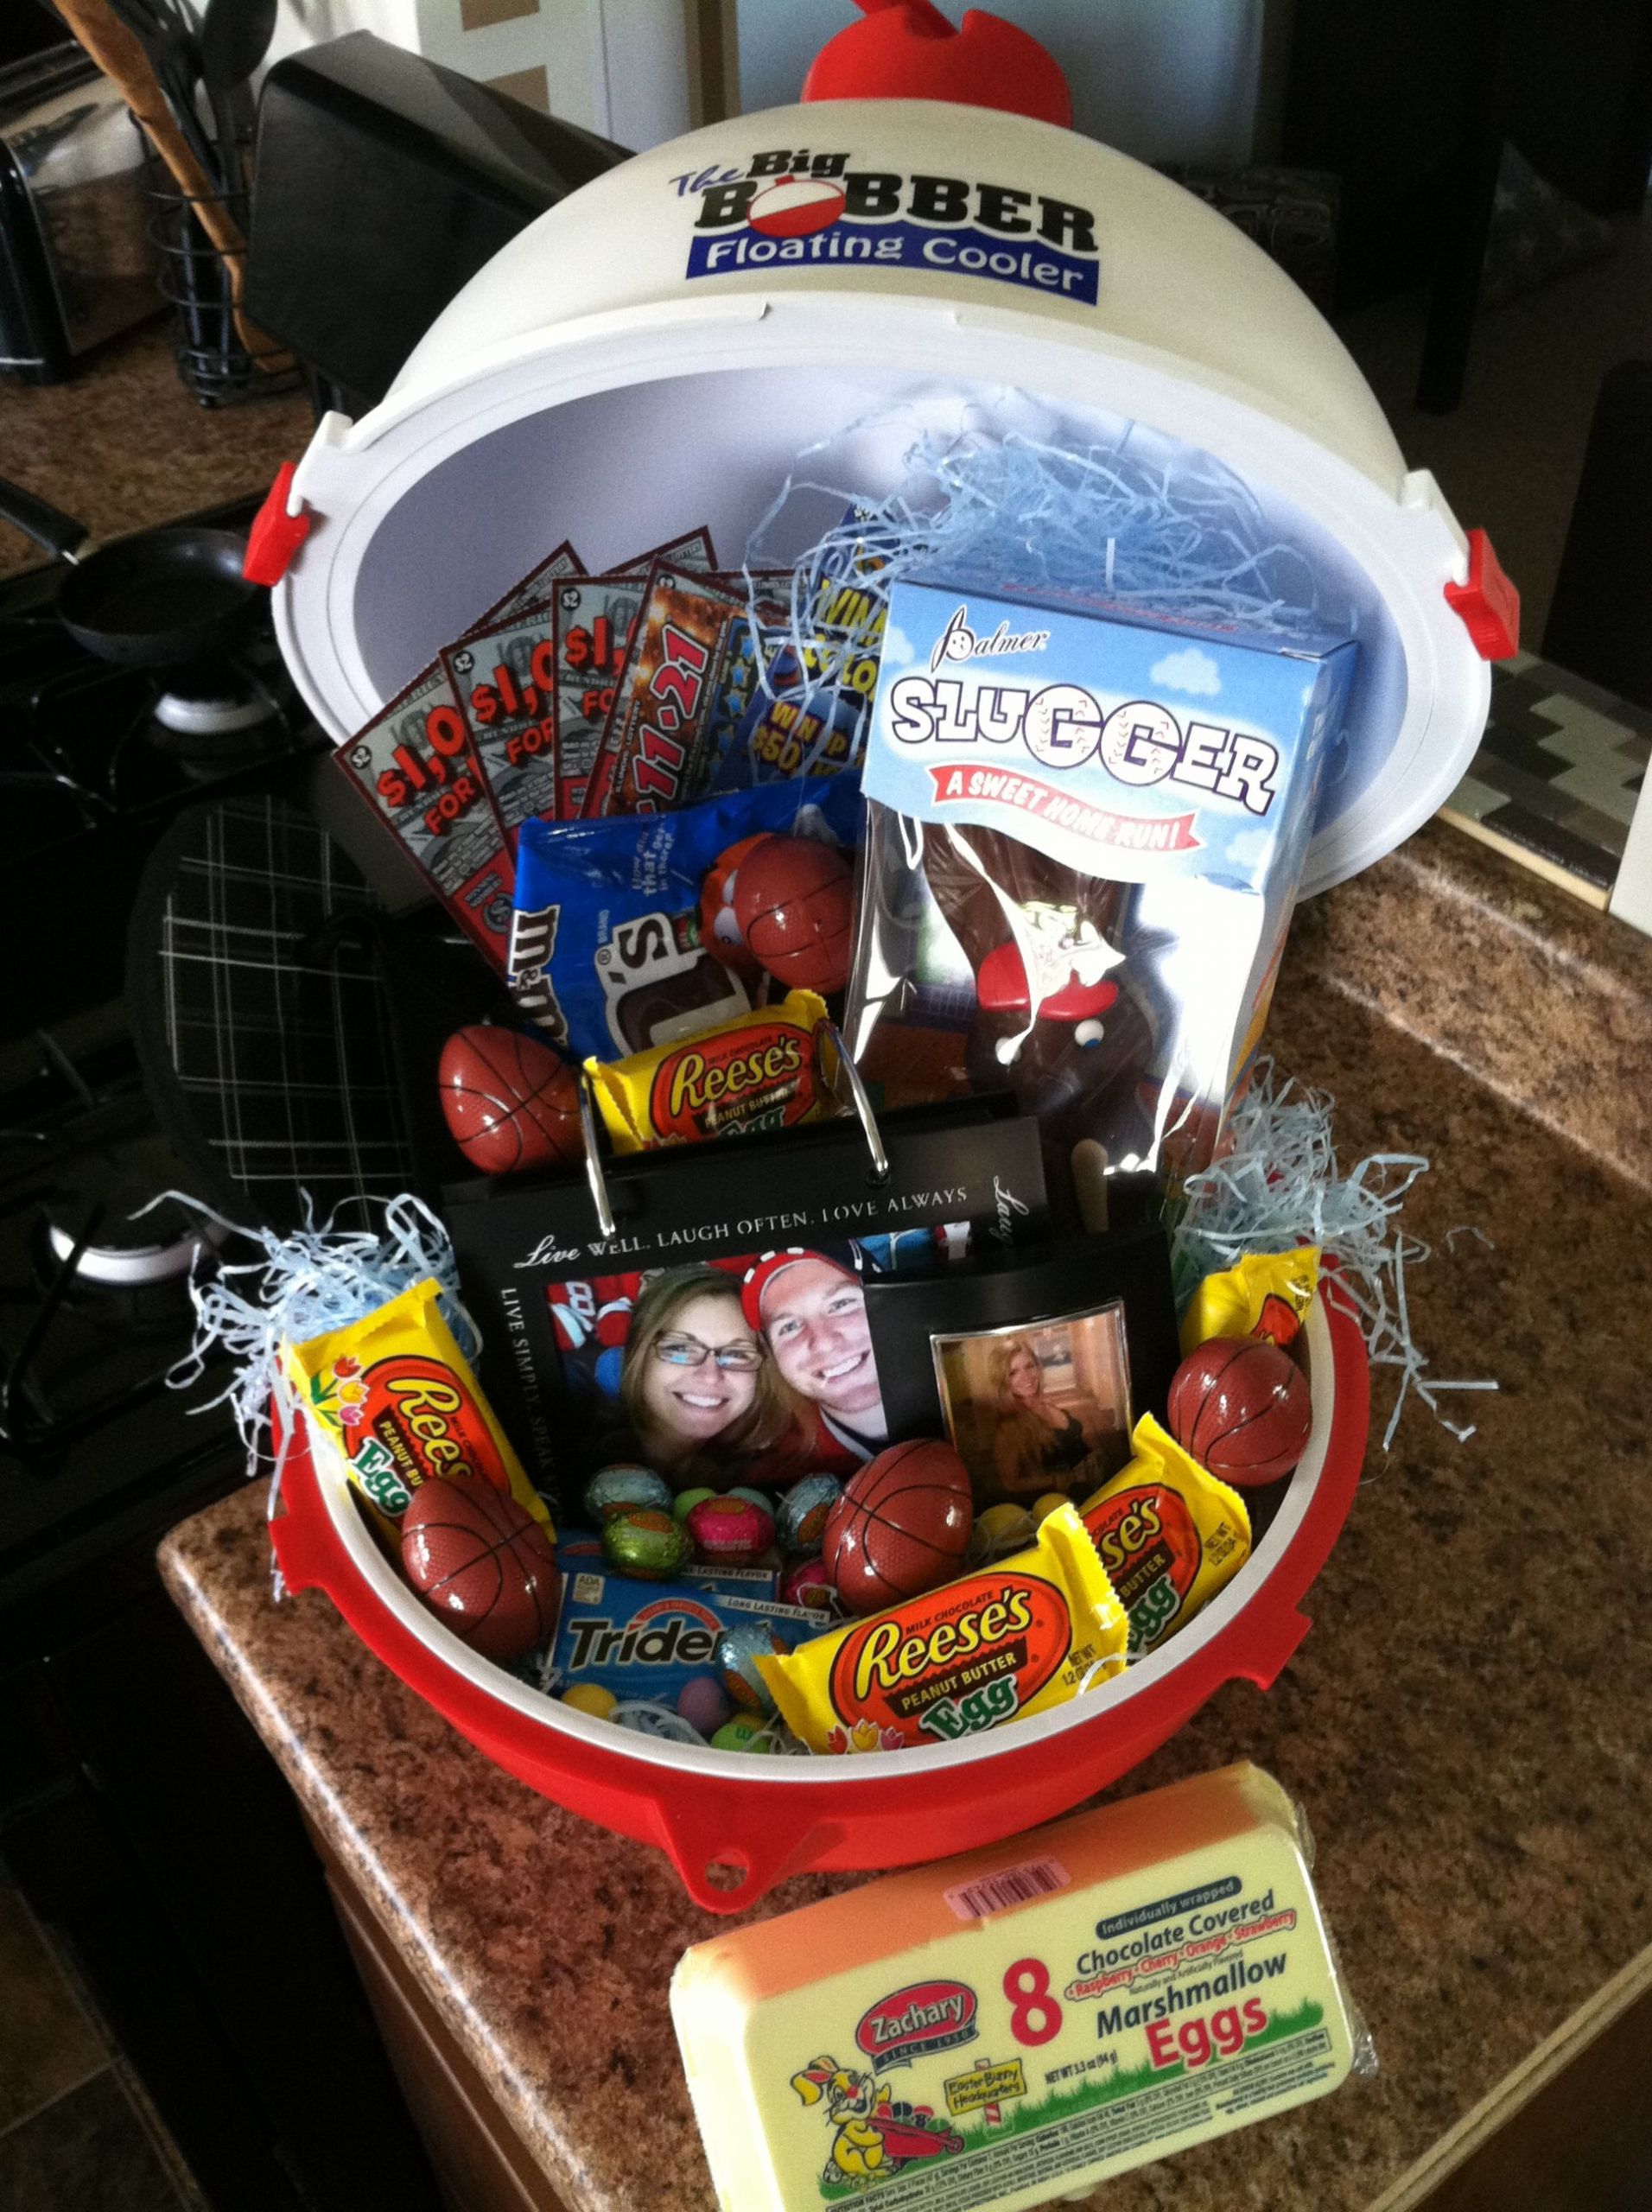 Easter Gifts For Men
 Man Easter Basket Idea Floating cooler Not a bad idea